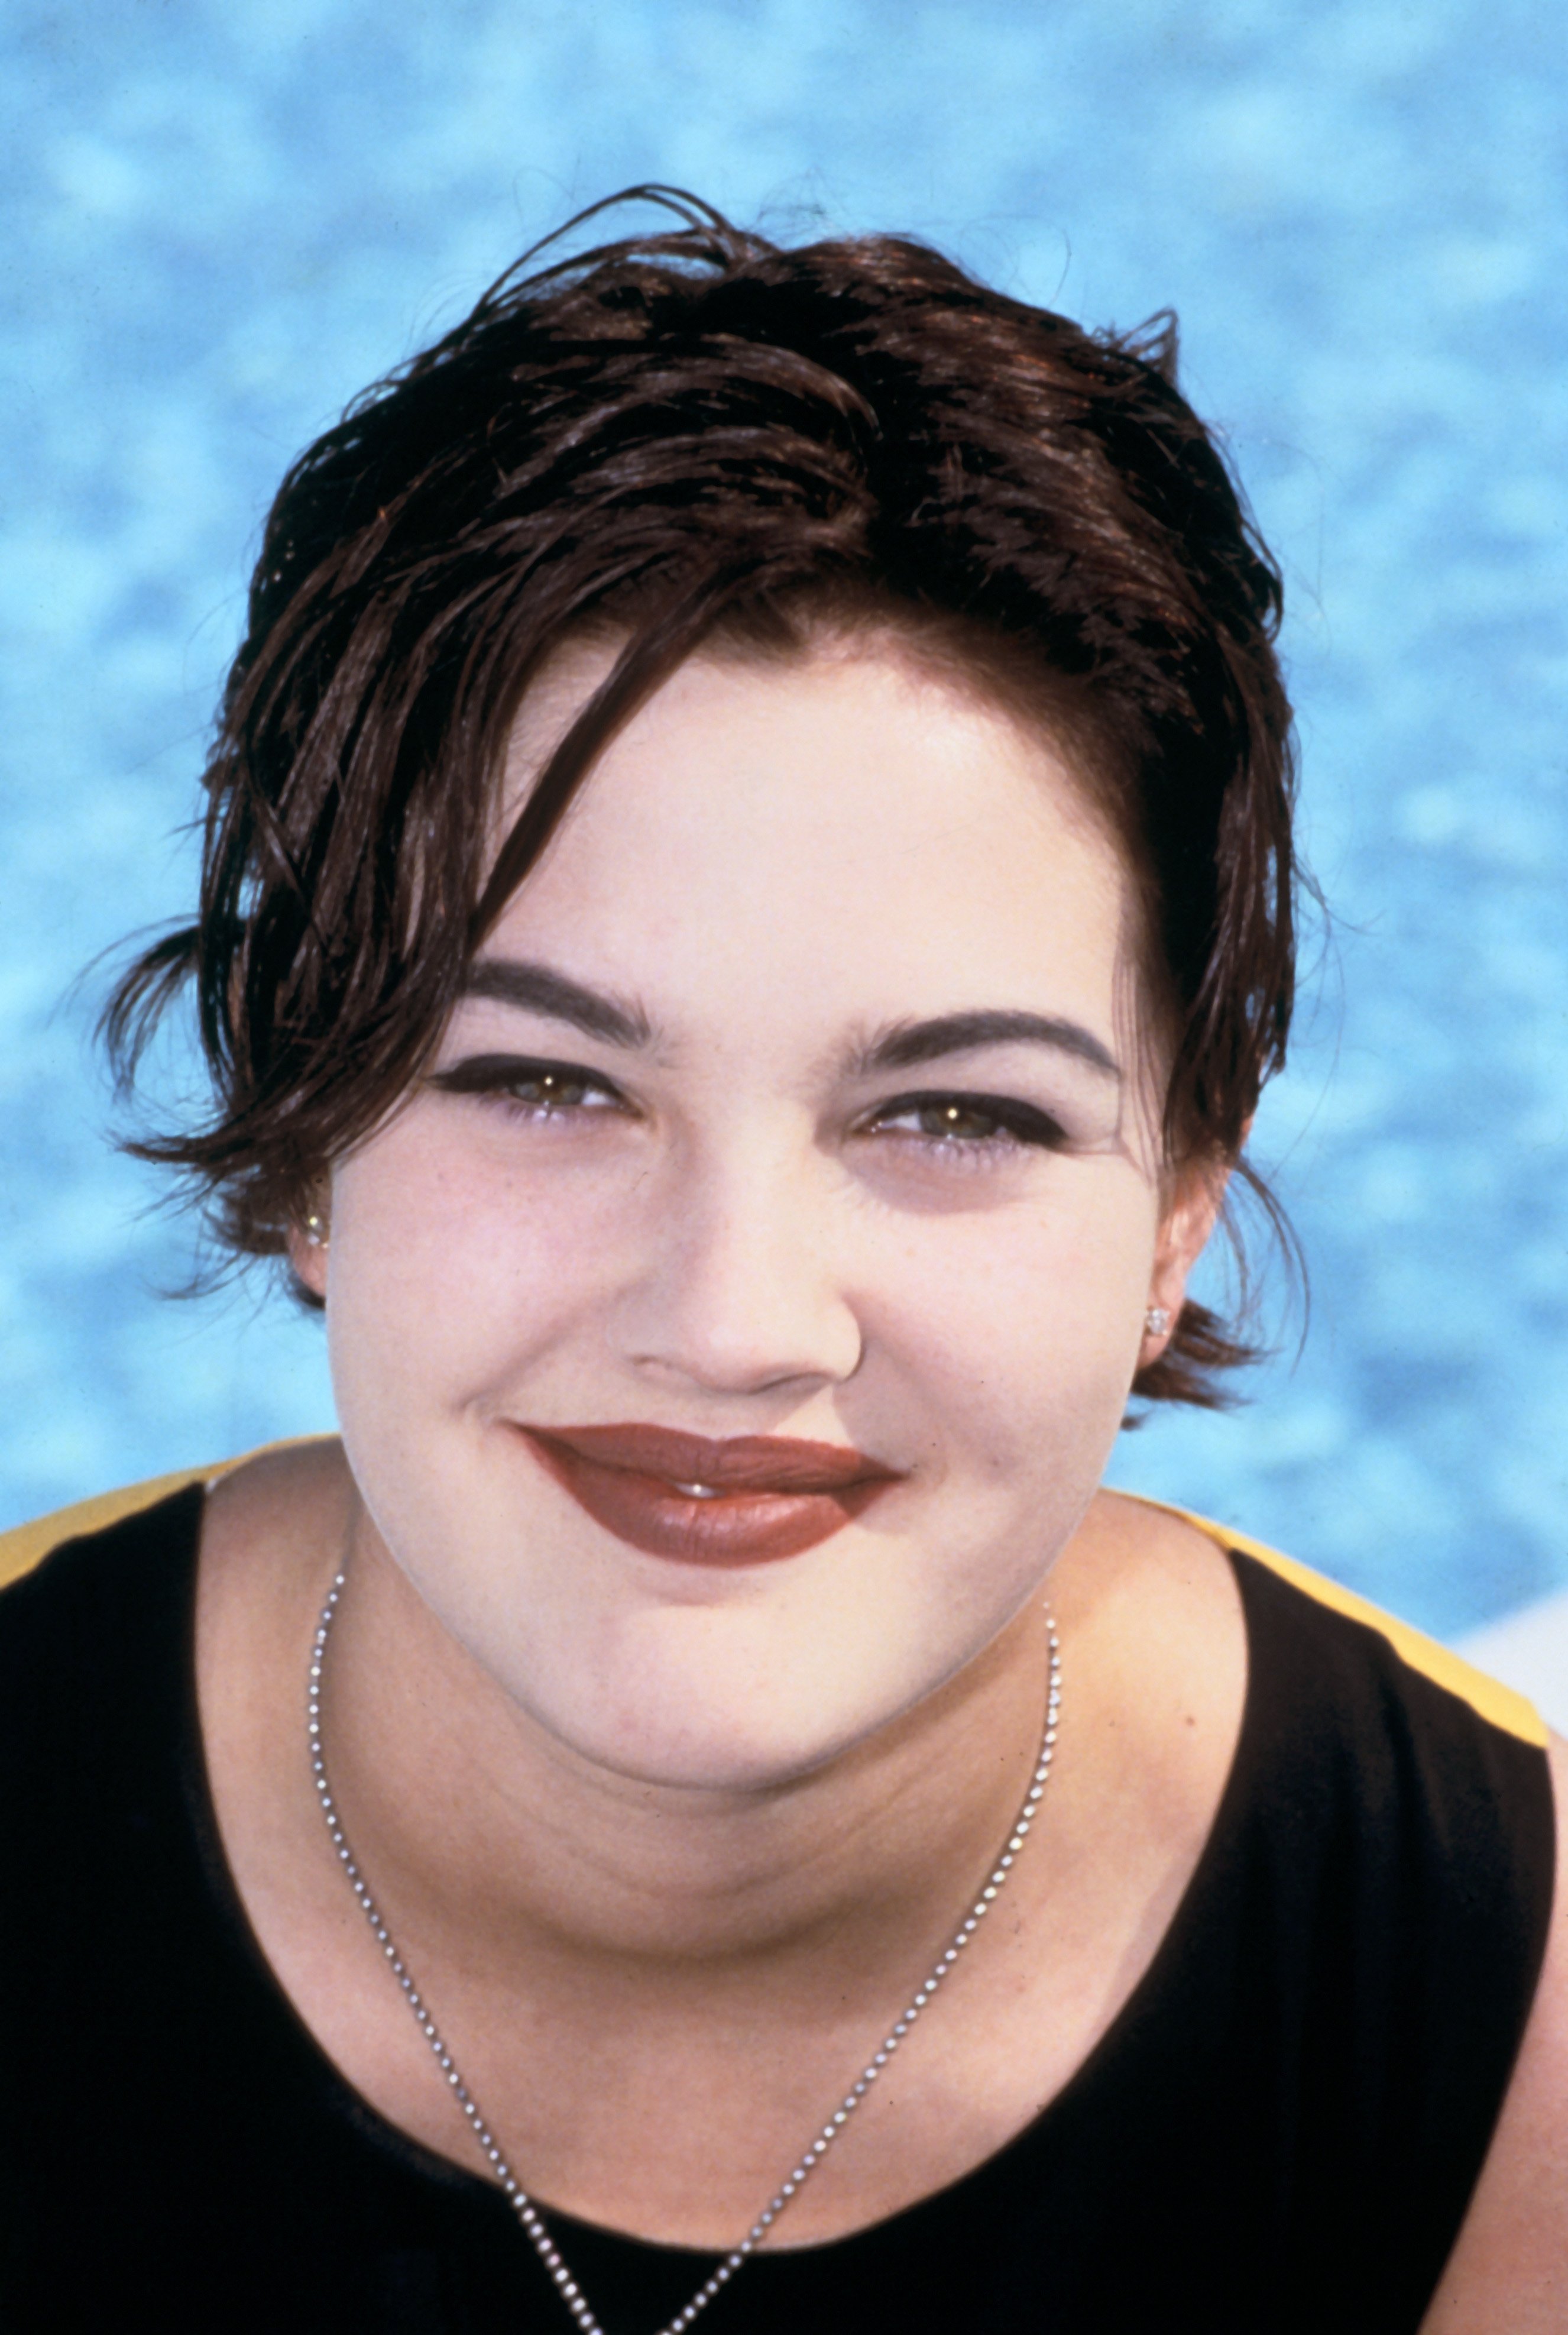 Drew Barrymore, fotografiert am 1. Januar 1990 | Quelle: Getty Images